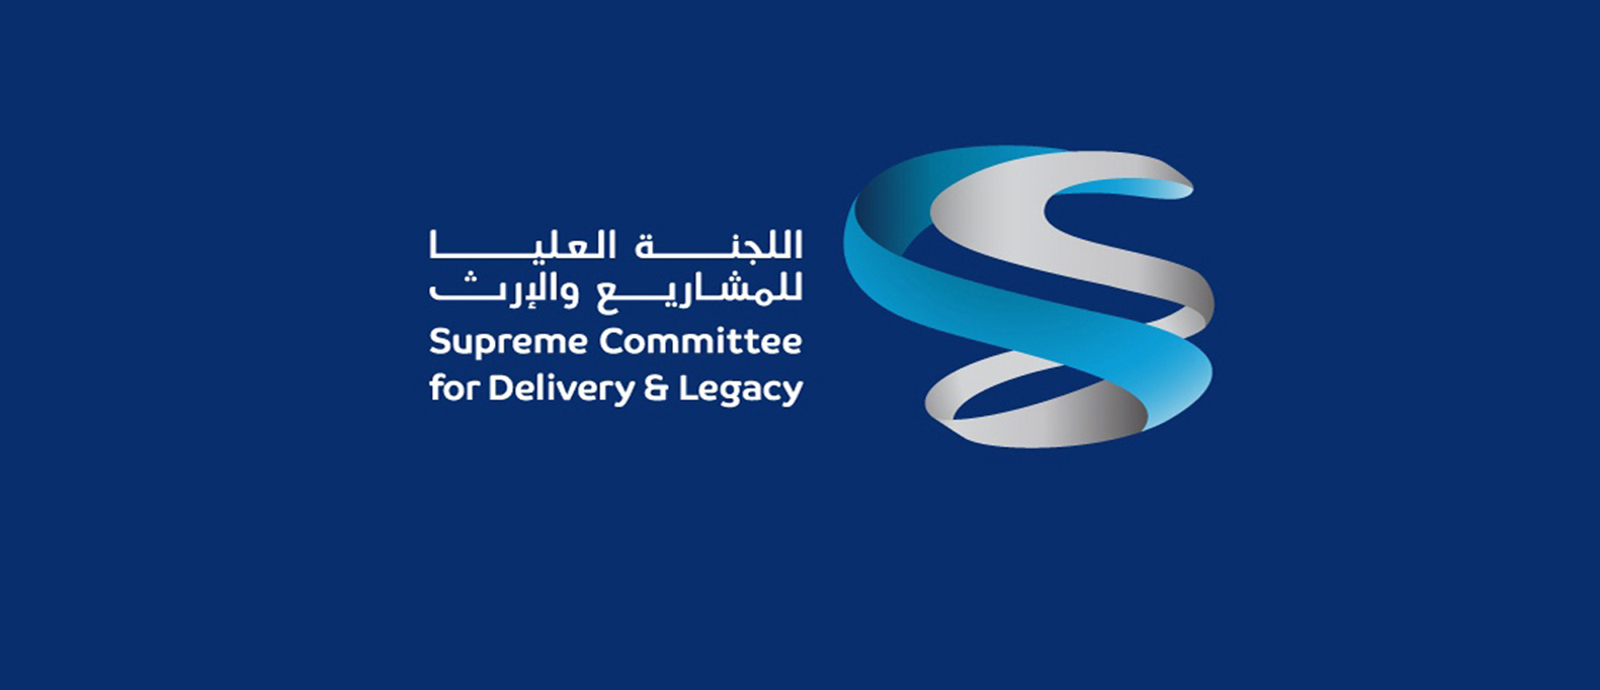 شعار اللجنة العليا للمشاريع والإرث